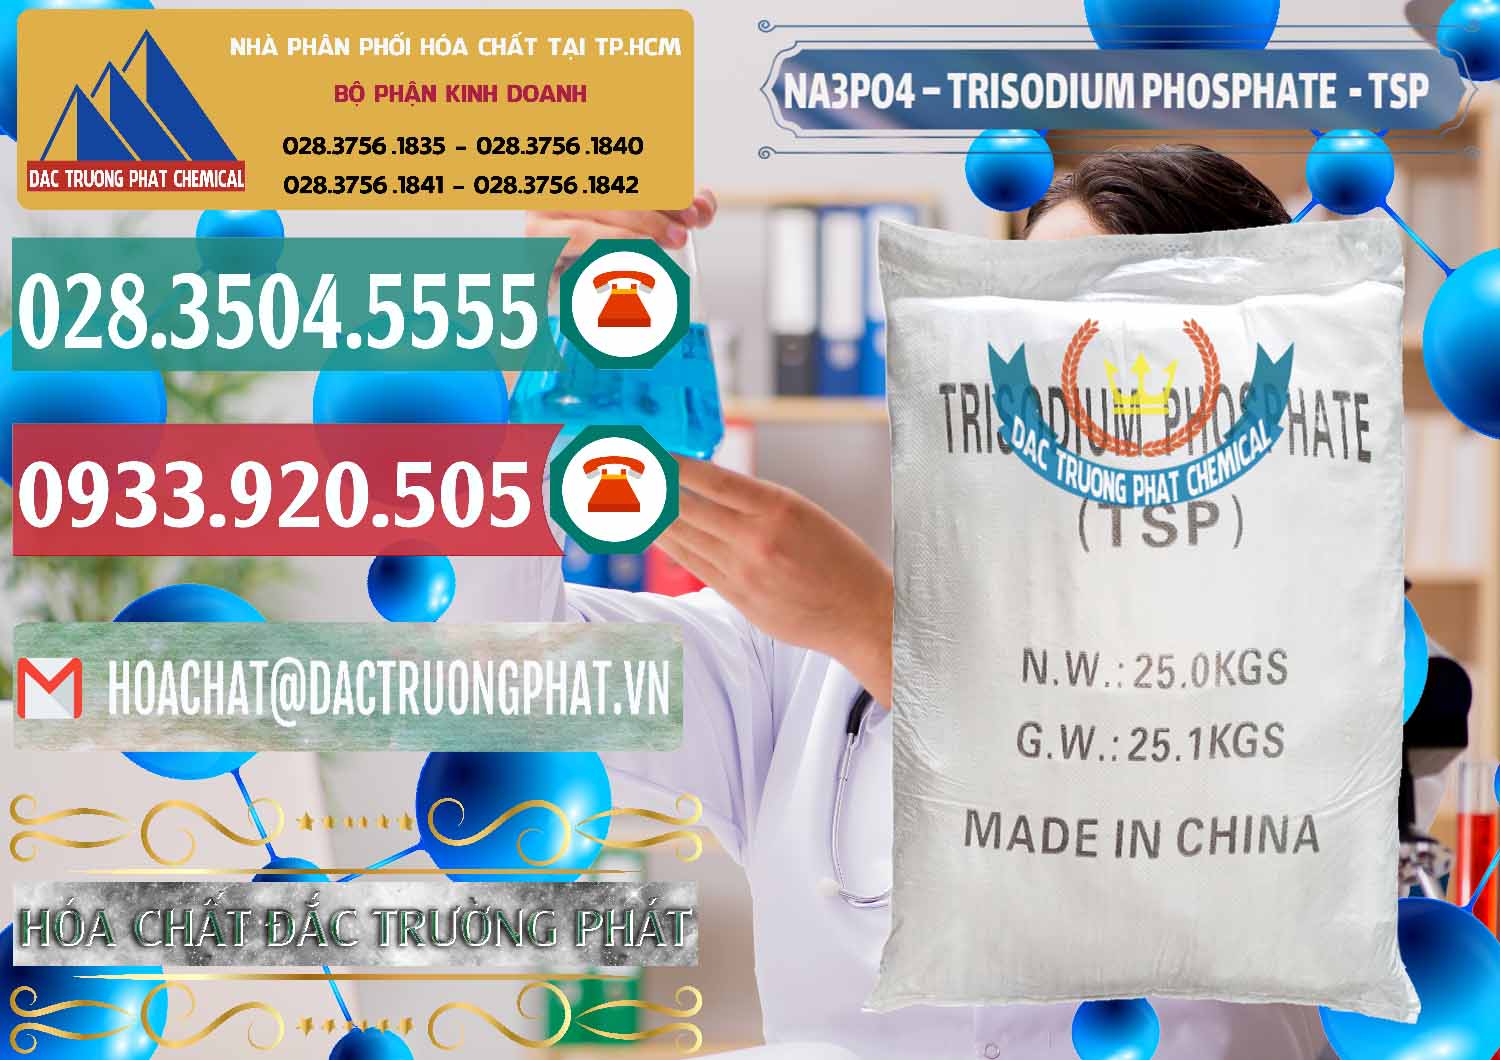 Nơi kinh doanh và bán Na3PO4 – Trisodium Phosphate Trung Quốc China TSP - 0103 - Công ty kinh doanh & phân phối hóa chất tại TP.HCM - muabanhoachat.vn